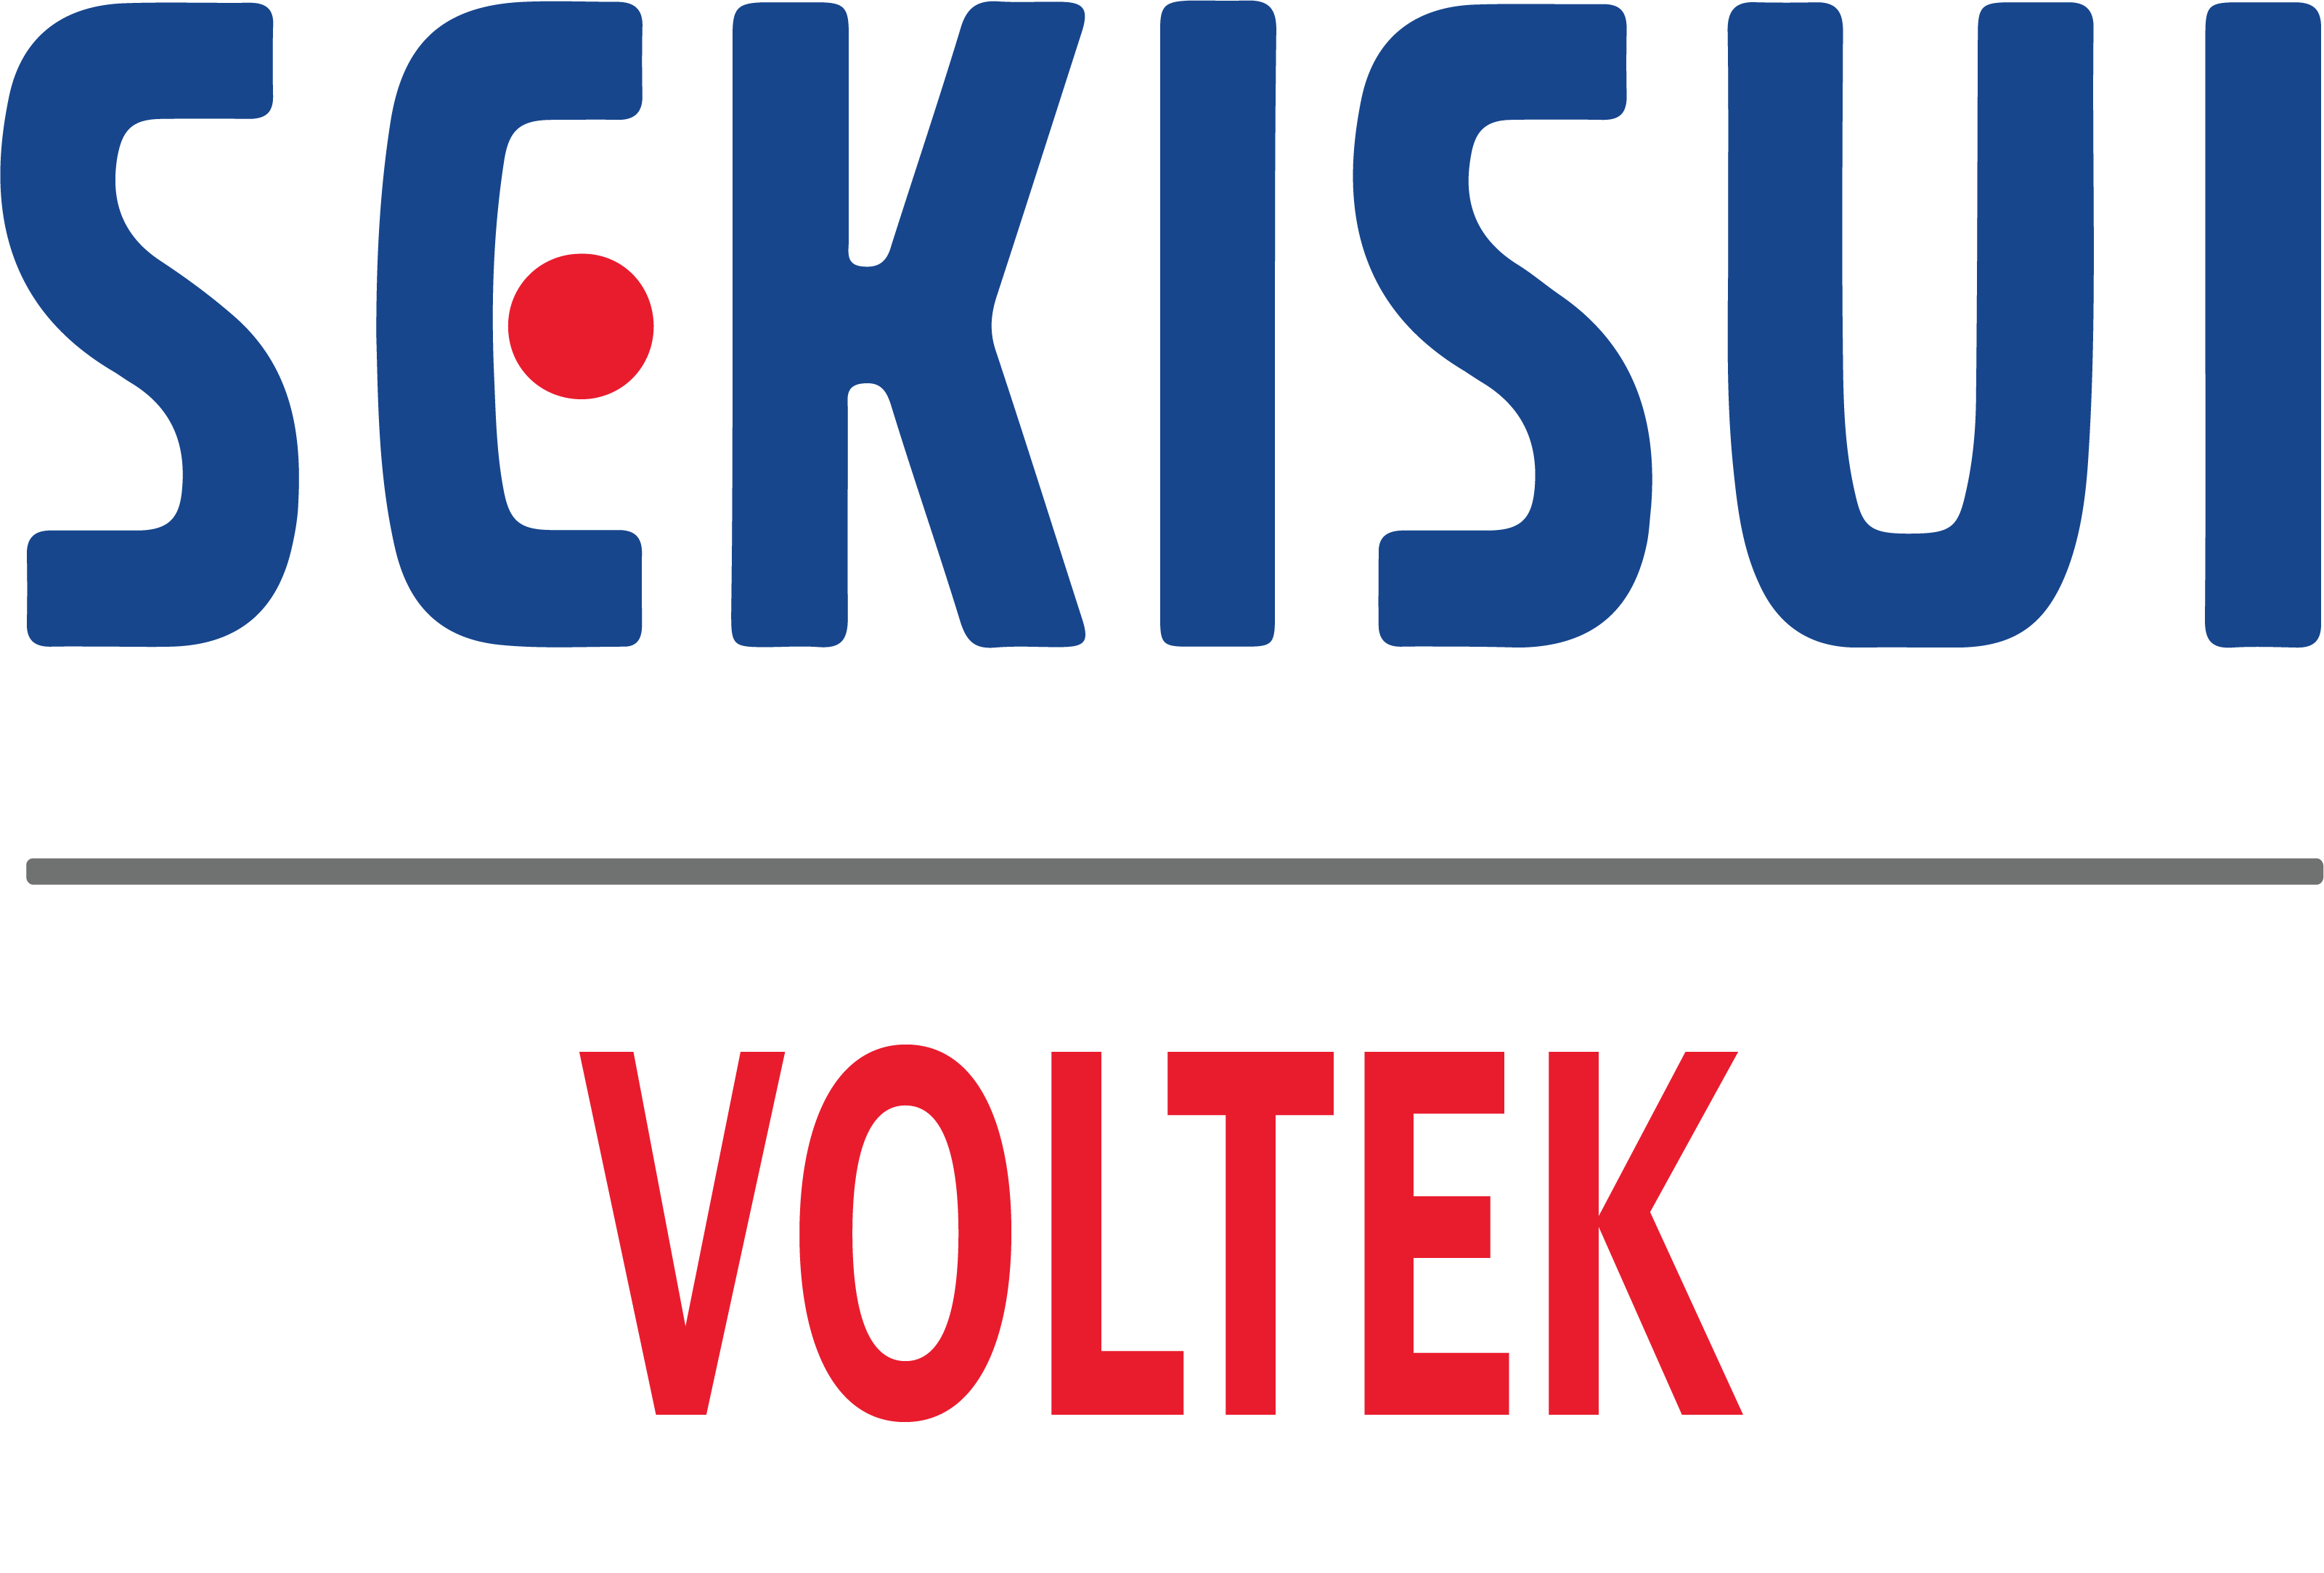 Sekisui Voltek logo 